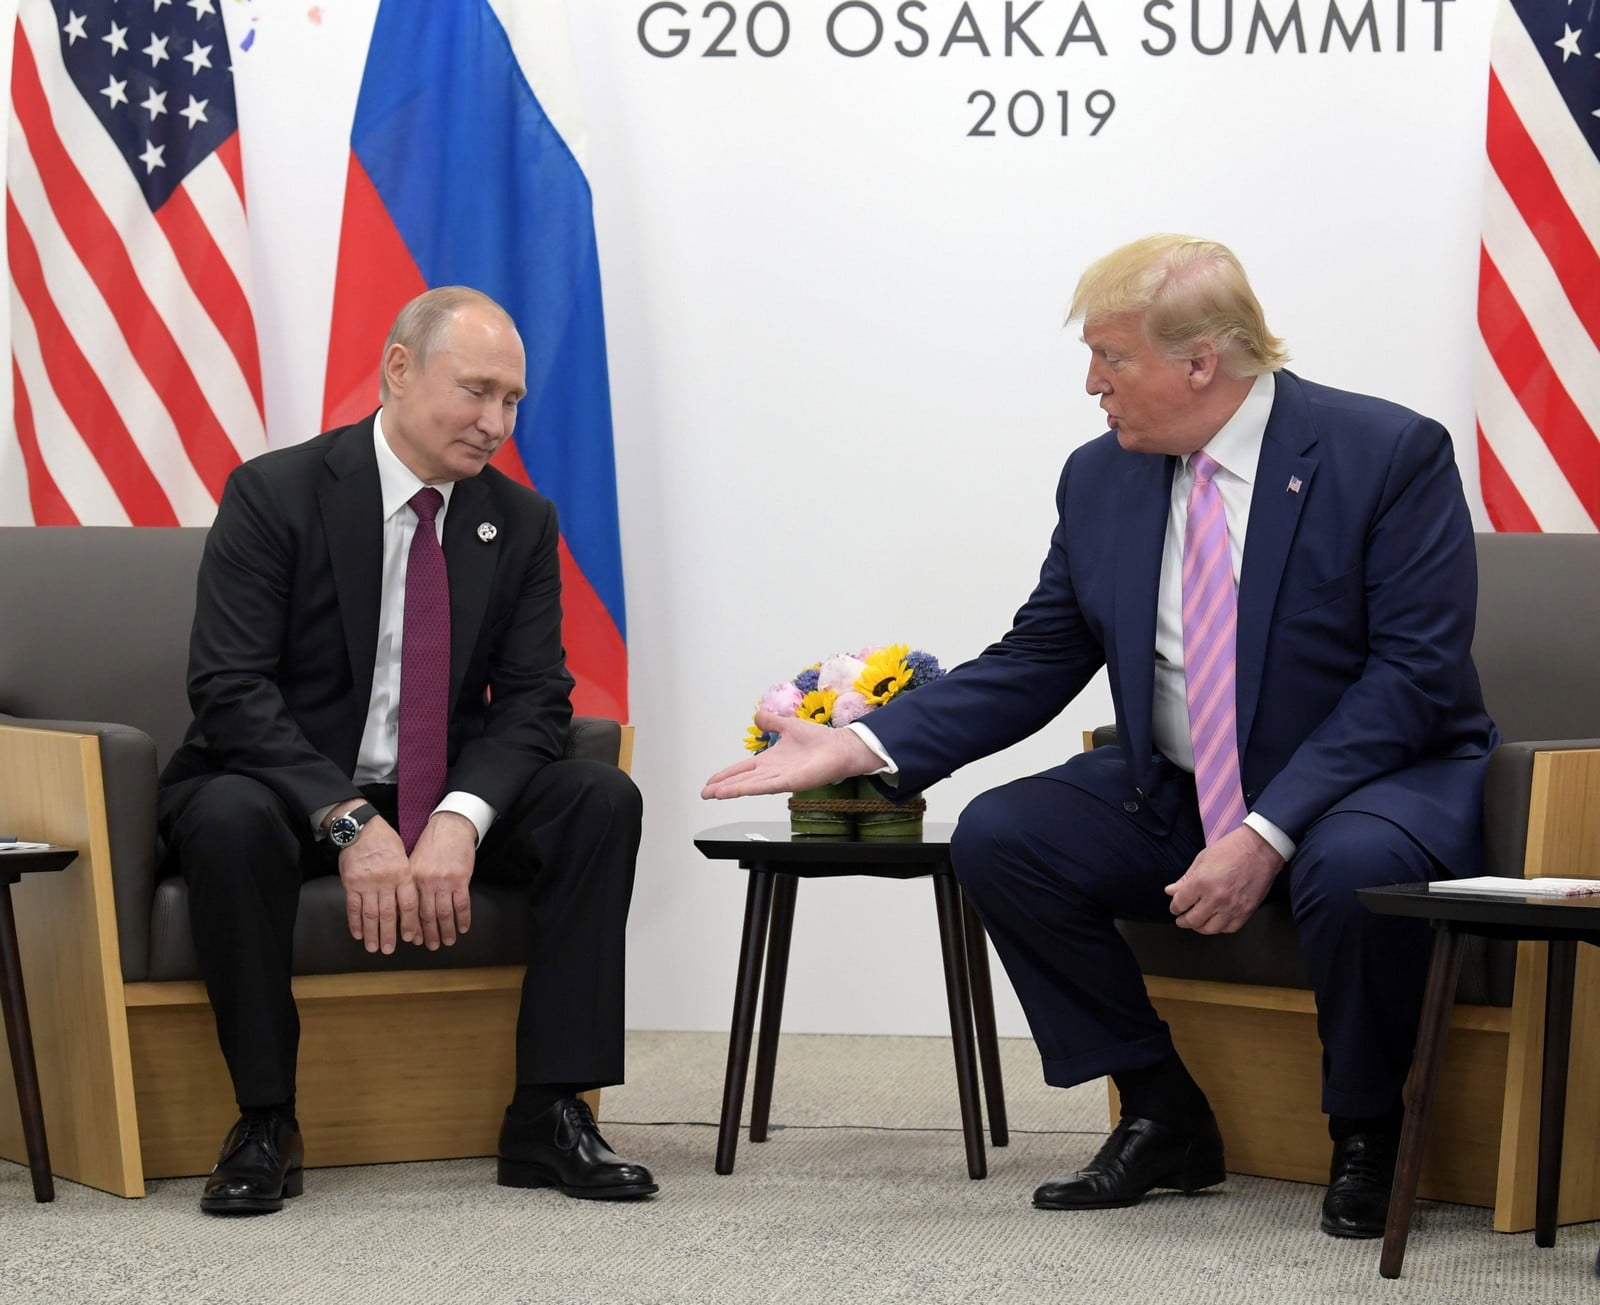 Donald Trump et Vladimir Poutine lors du G20 à Osaka au Japon le 28 juin 2019,
Auteurs  : Kommersant/SIPA,
Numéro de reportage  : SIPAUSA30173317_000003.